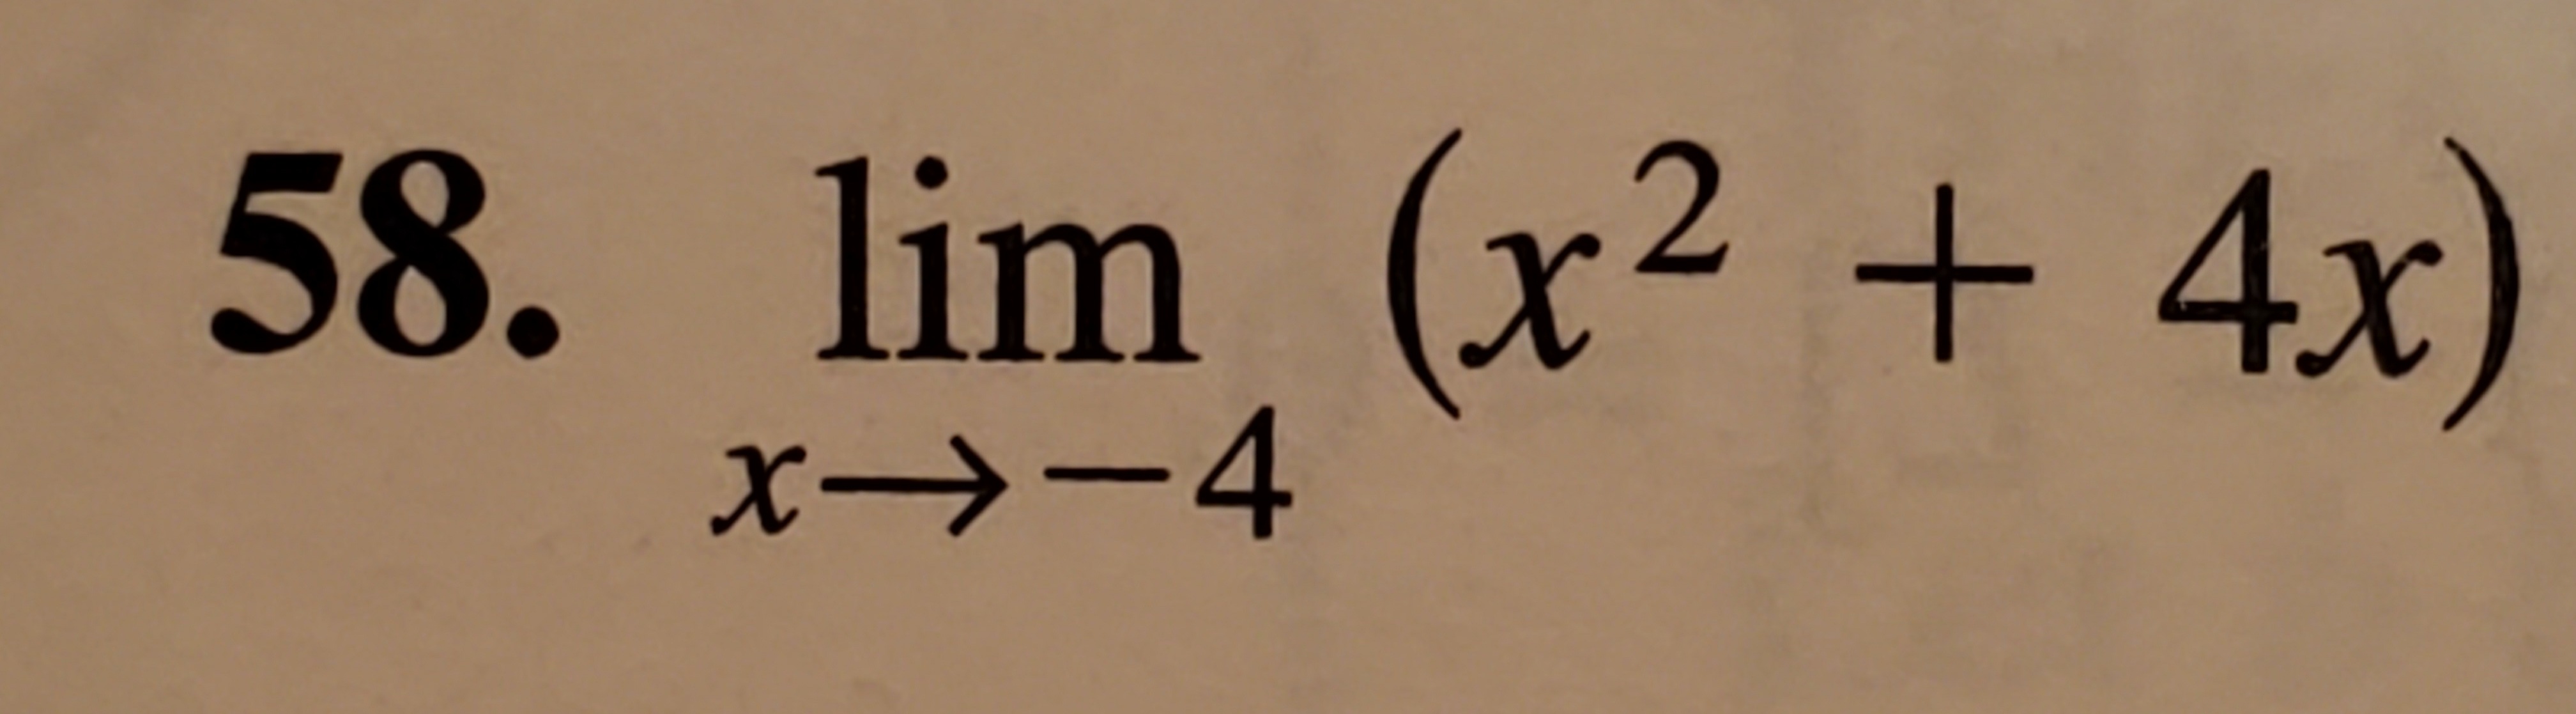 lim (x² + 4x)
2.
X→-4
